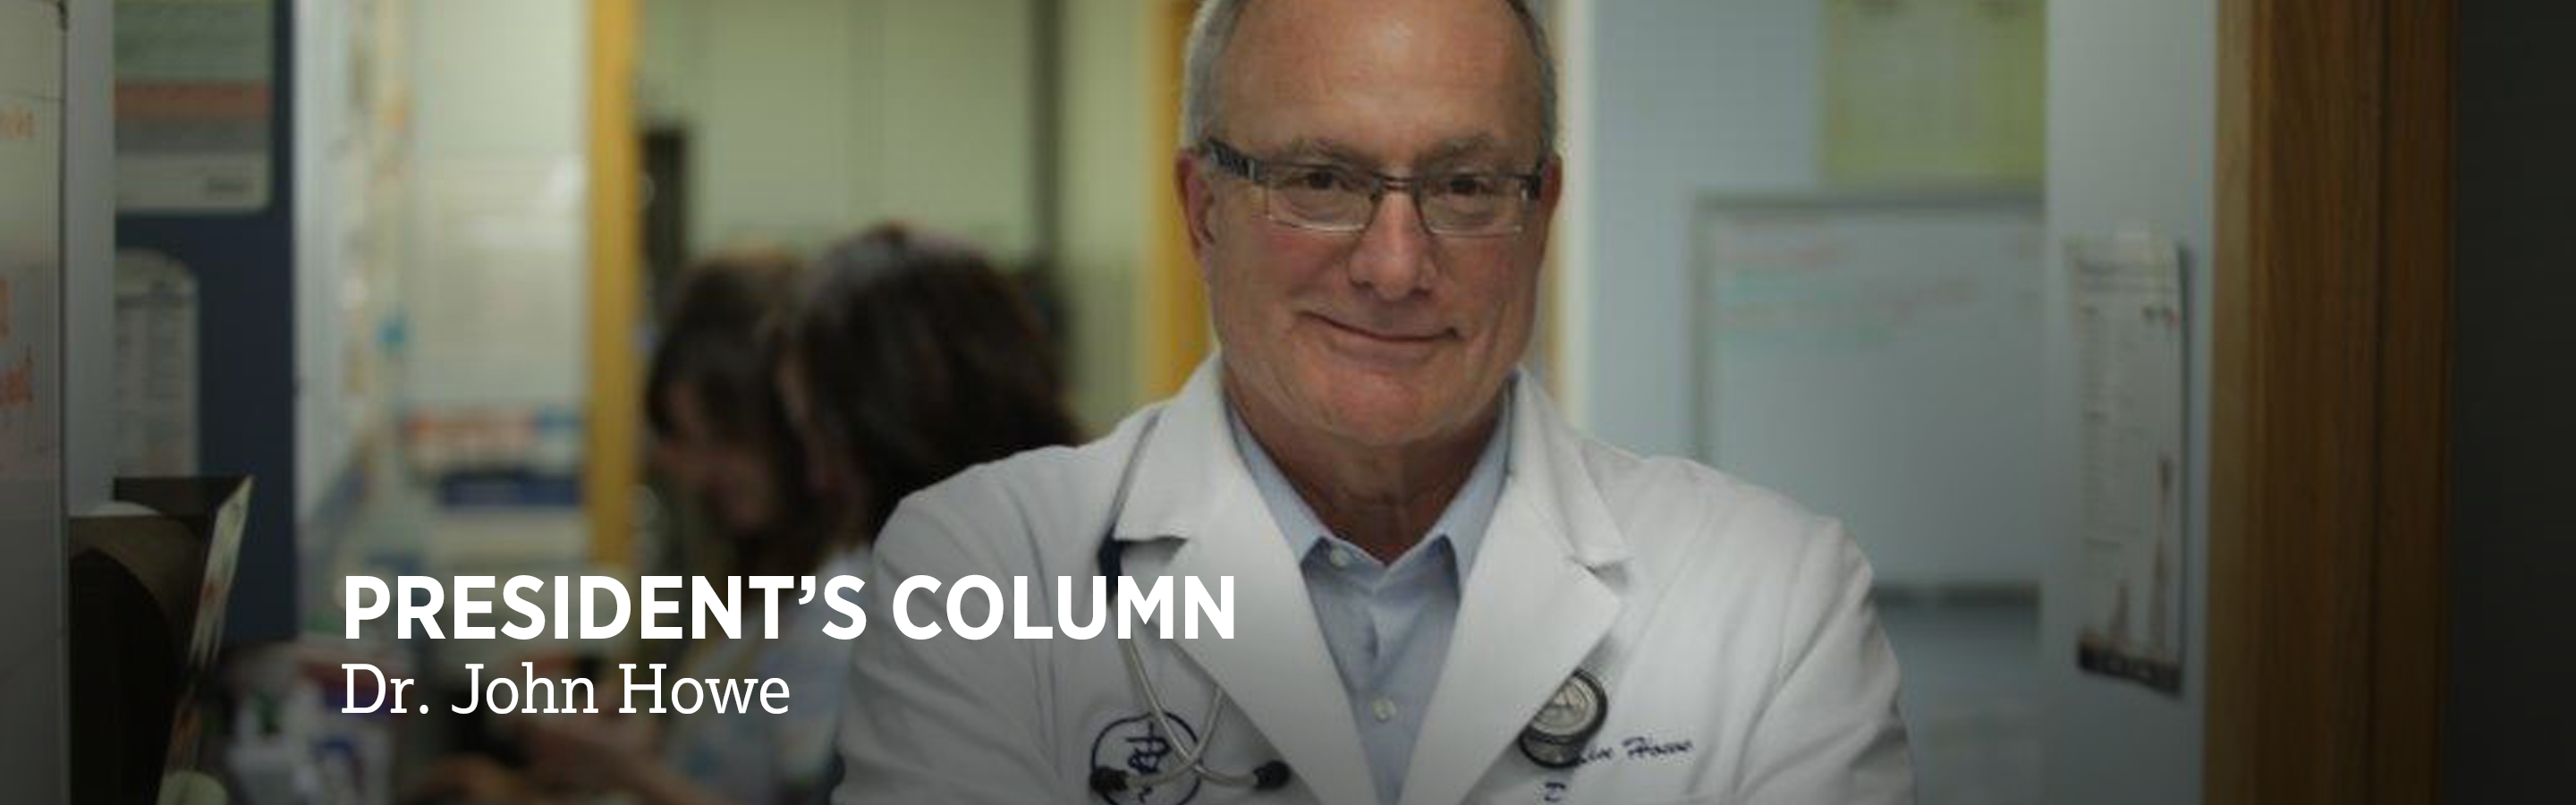 AVMA President's Column: Dr. John Howe